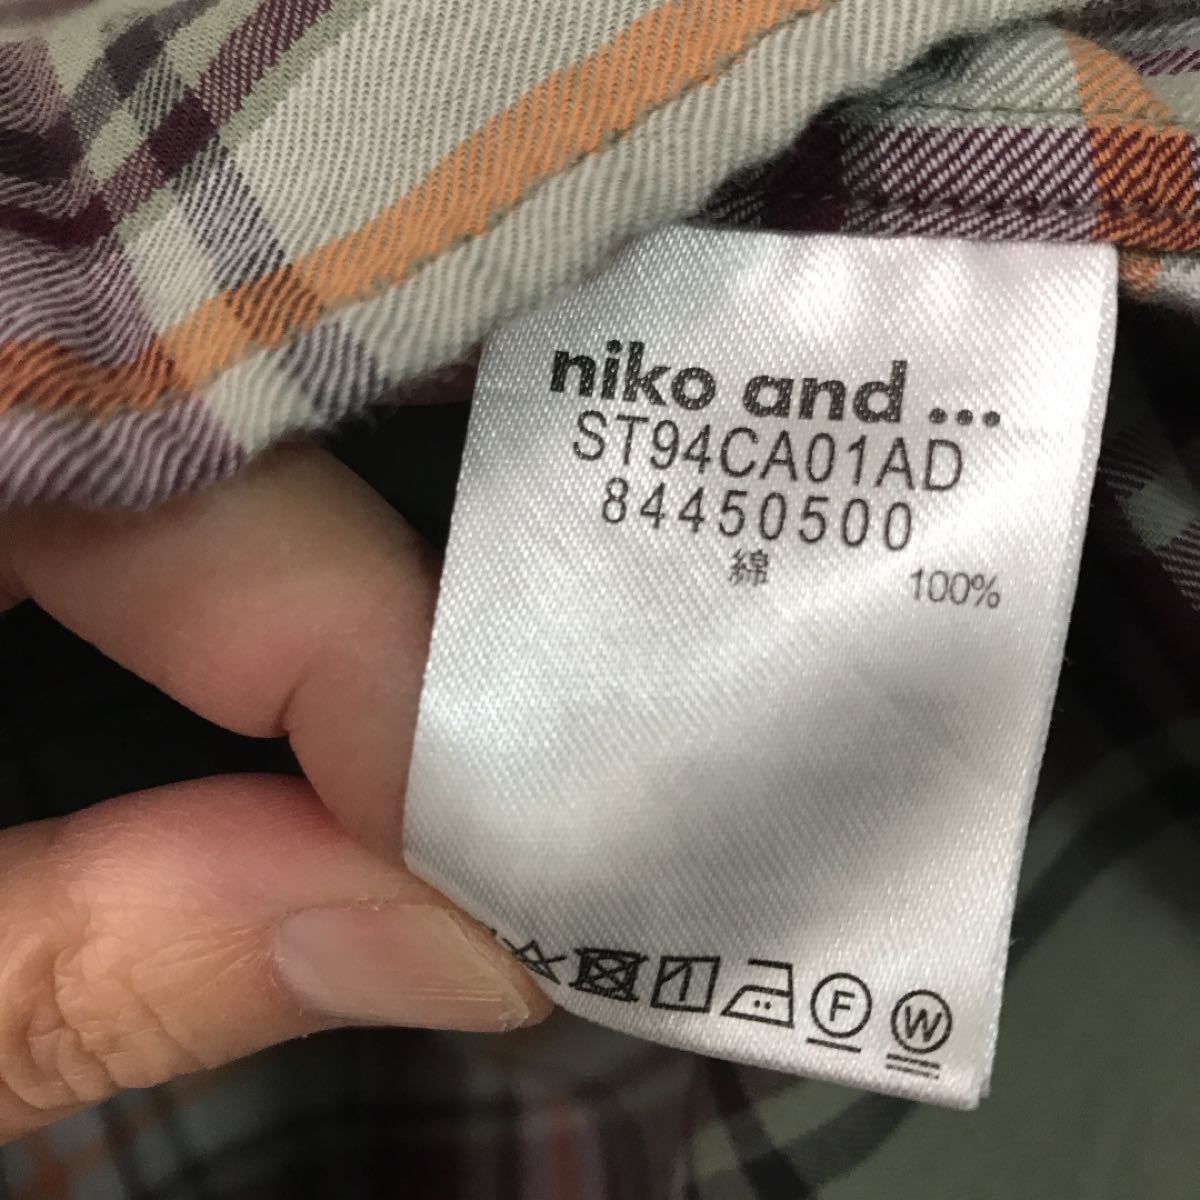 ニコアンドniko andチェック秋冬物ゆったりシャツregular shirtサイズ4着丈75身幅57